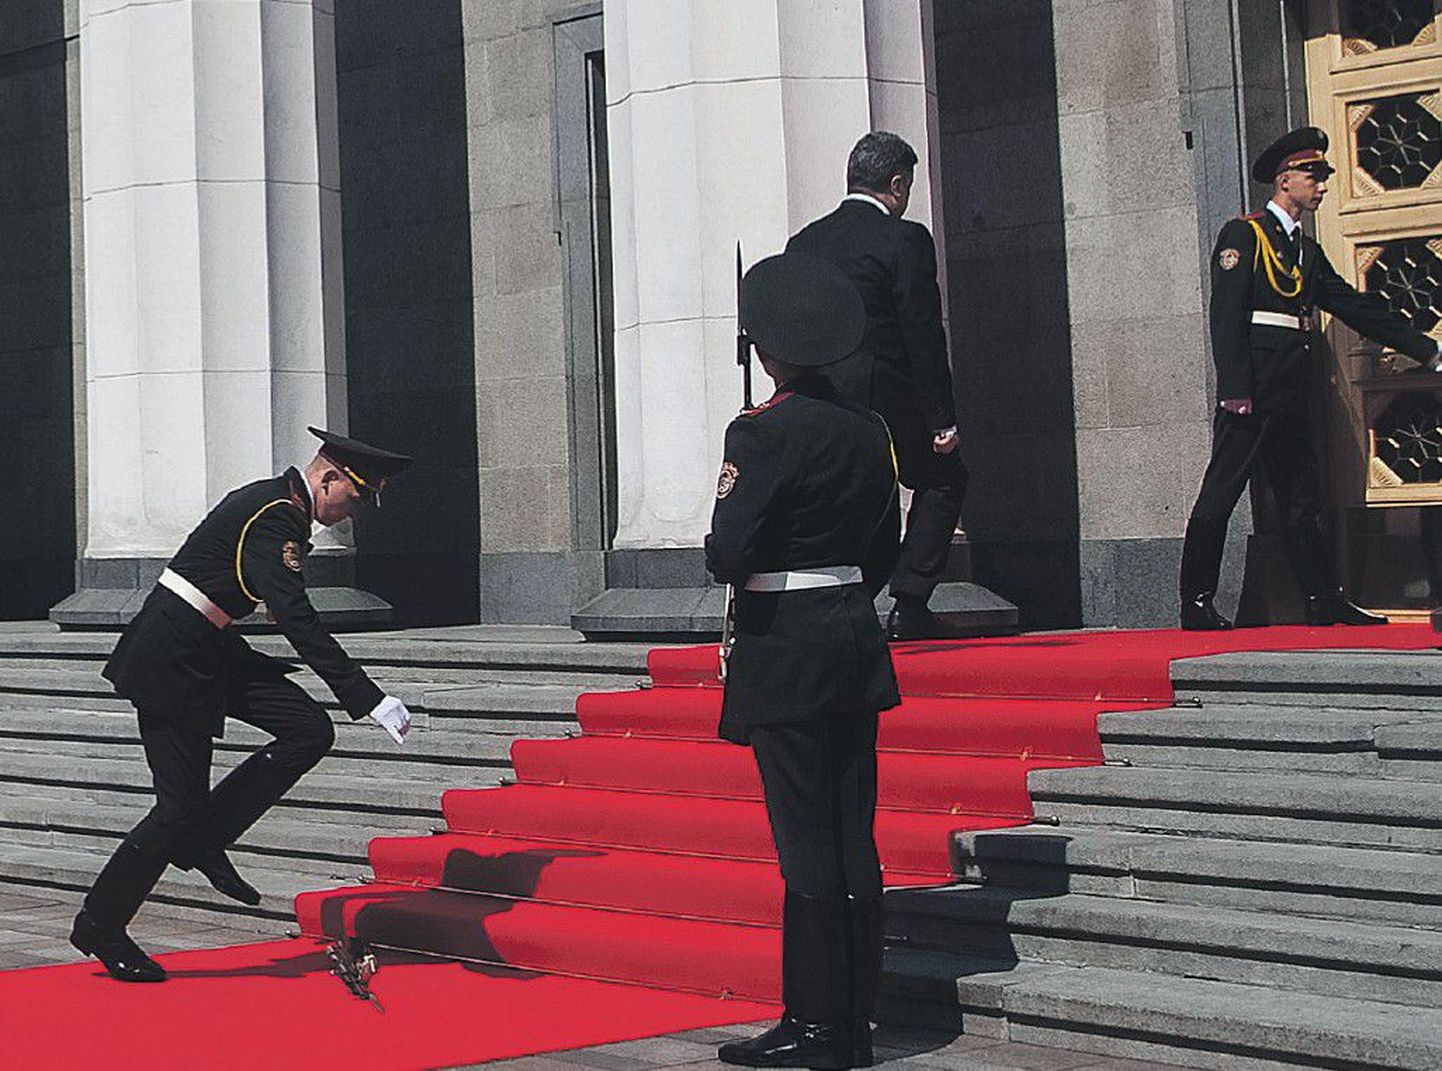 Обморок молодого солдата, случившийся во время инаугурации Петра Порошенко, многие восприняли как предзнаменование мира для Украины. Поведение президента, равнодушно прошедшего мимо, обсуждалось куда меньше.